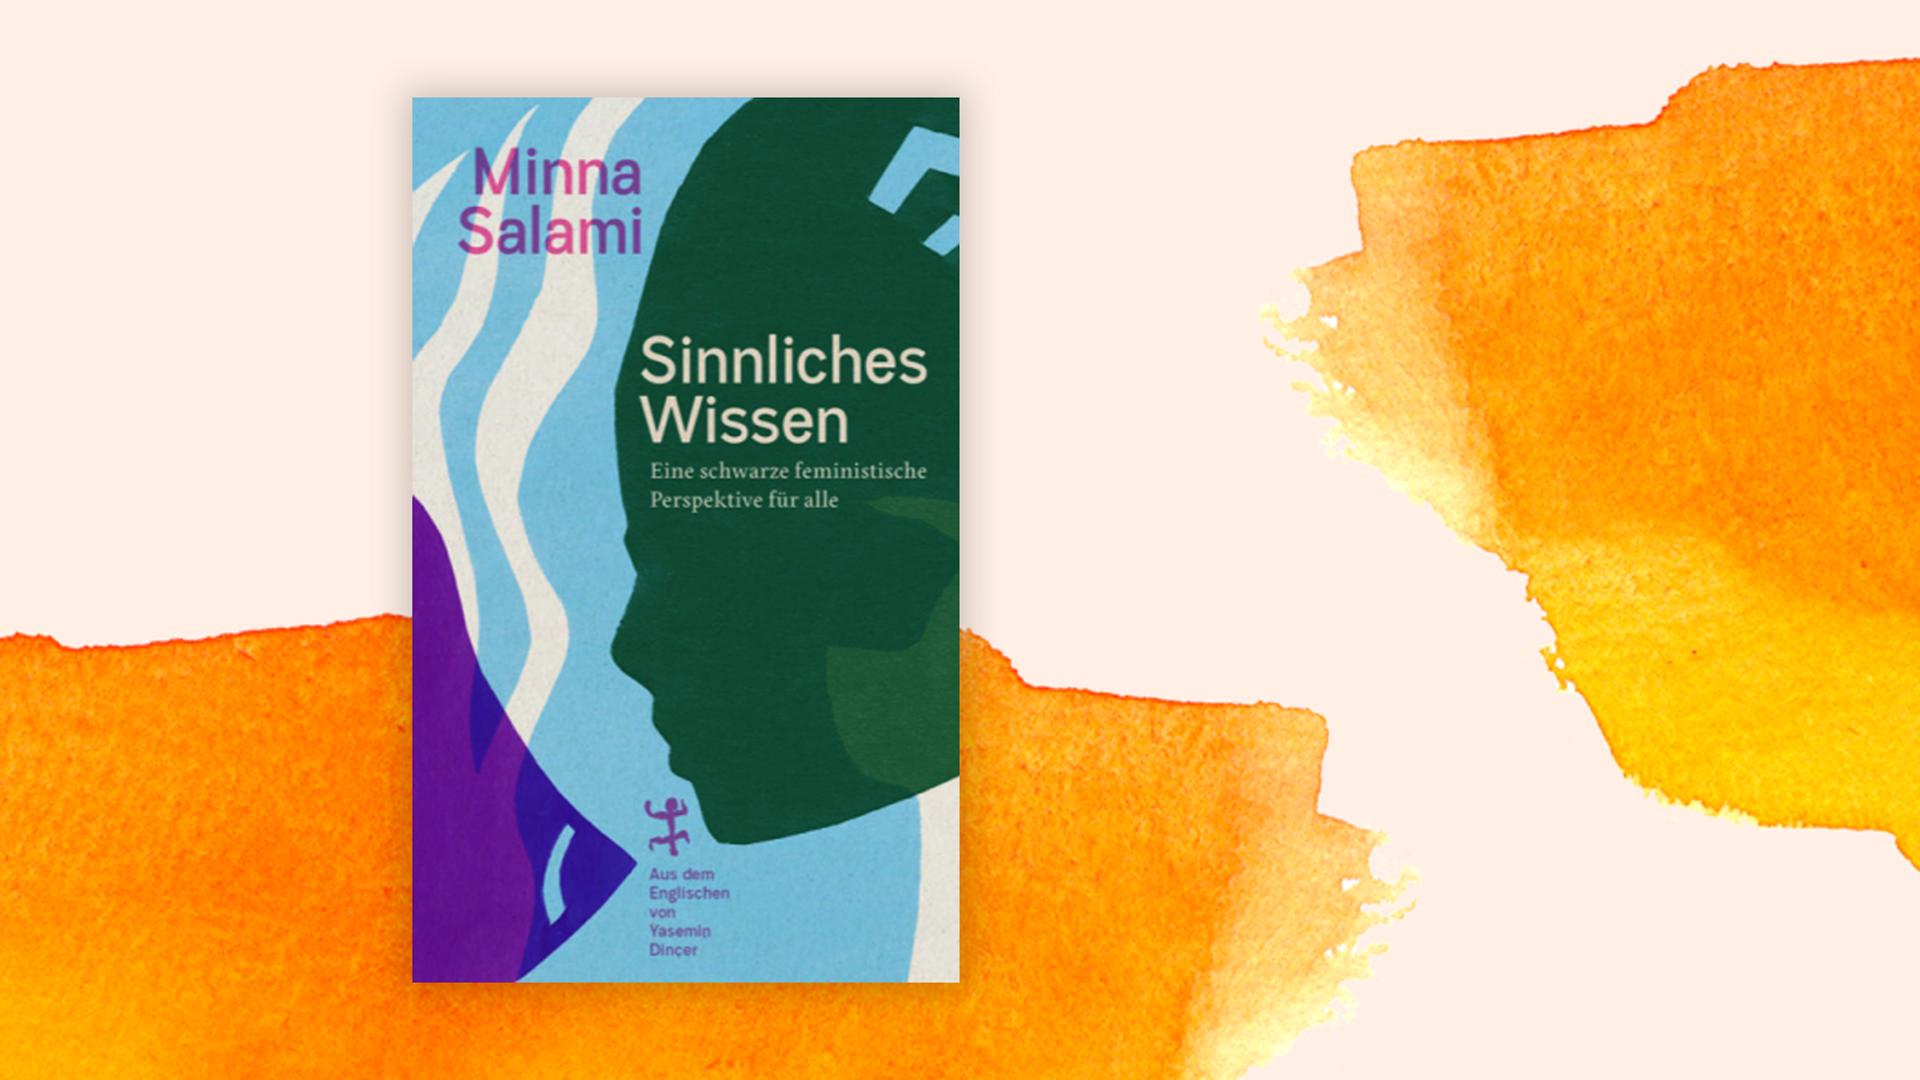 Buchcover Minna Salami "Sinnliches Wissen"